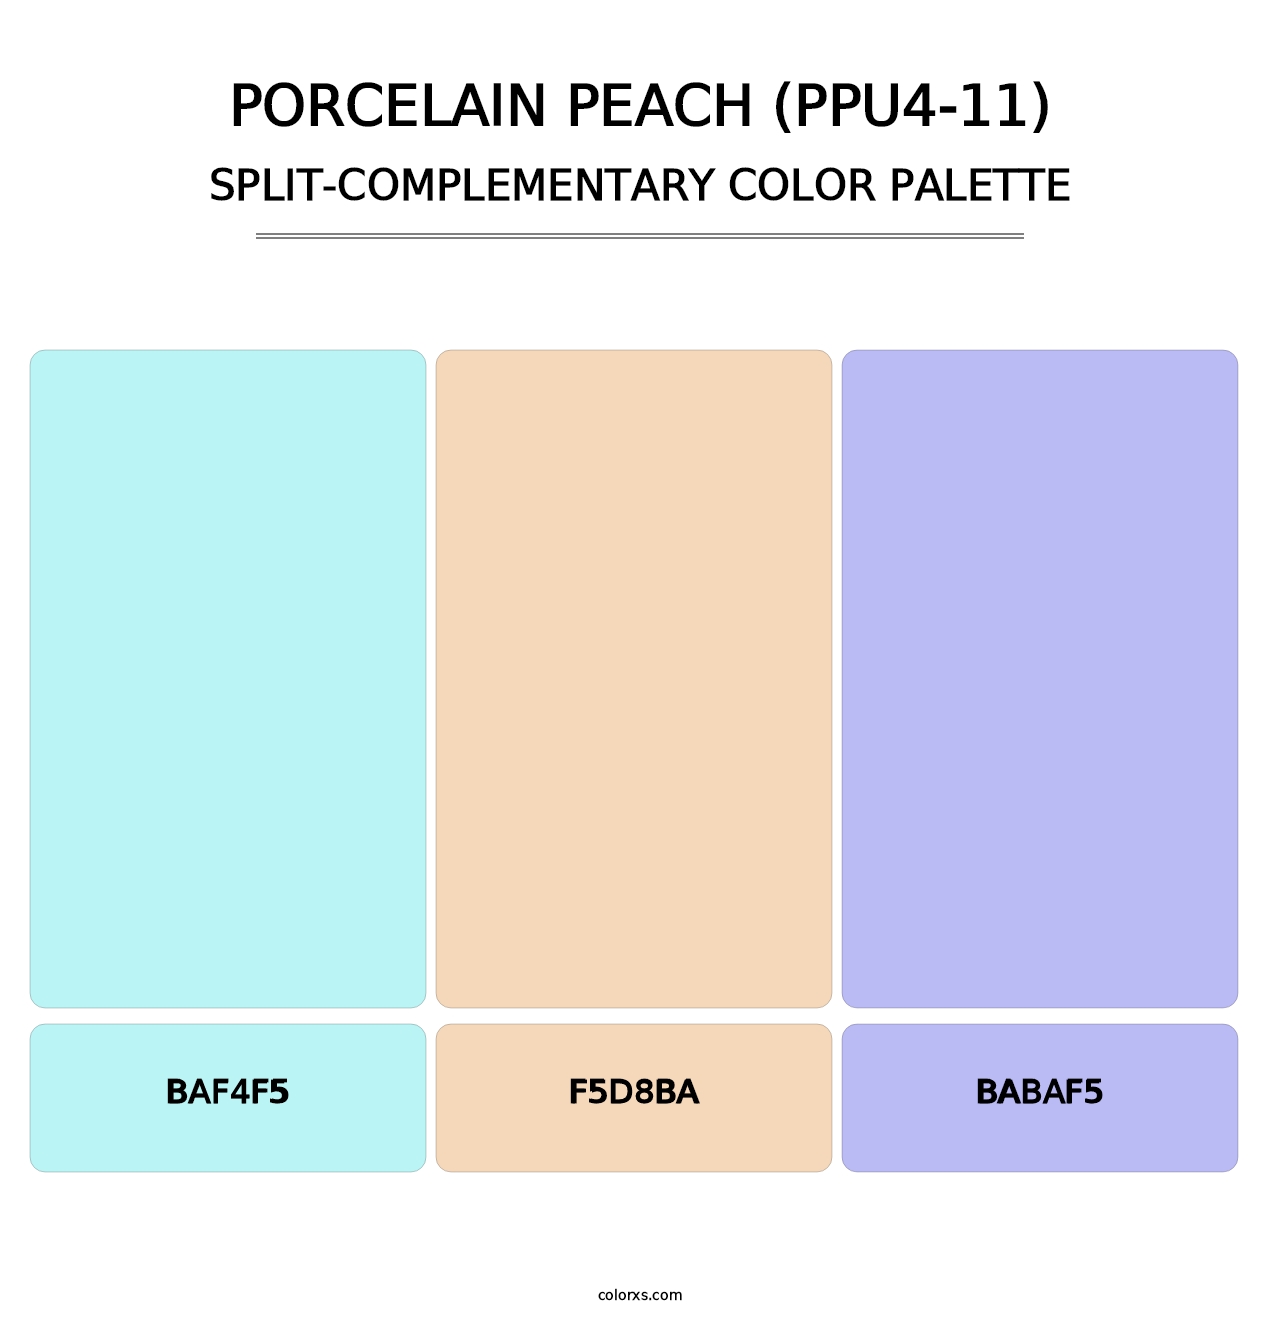 Porcelain Peach (PPU4-11) - Split-Complementary Color Palette